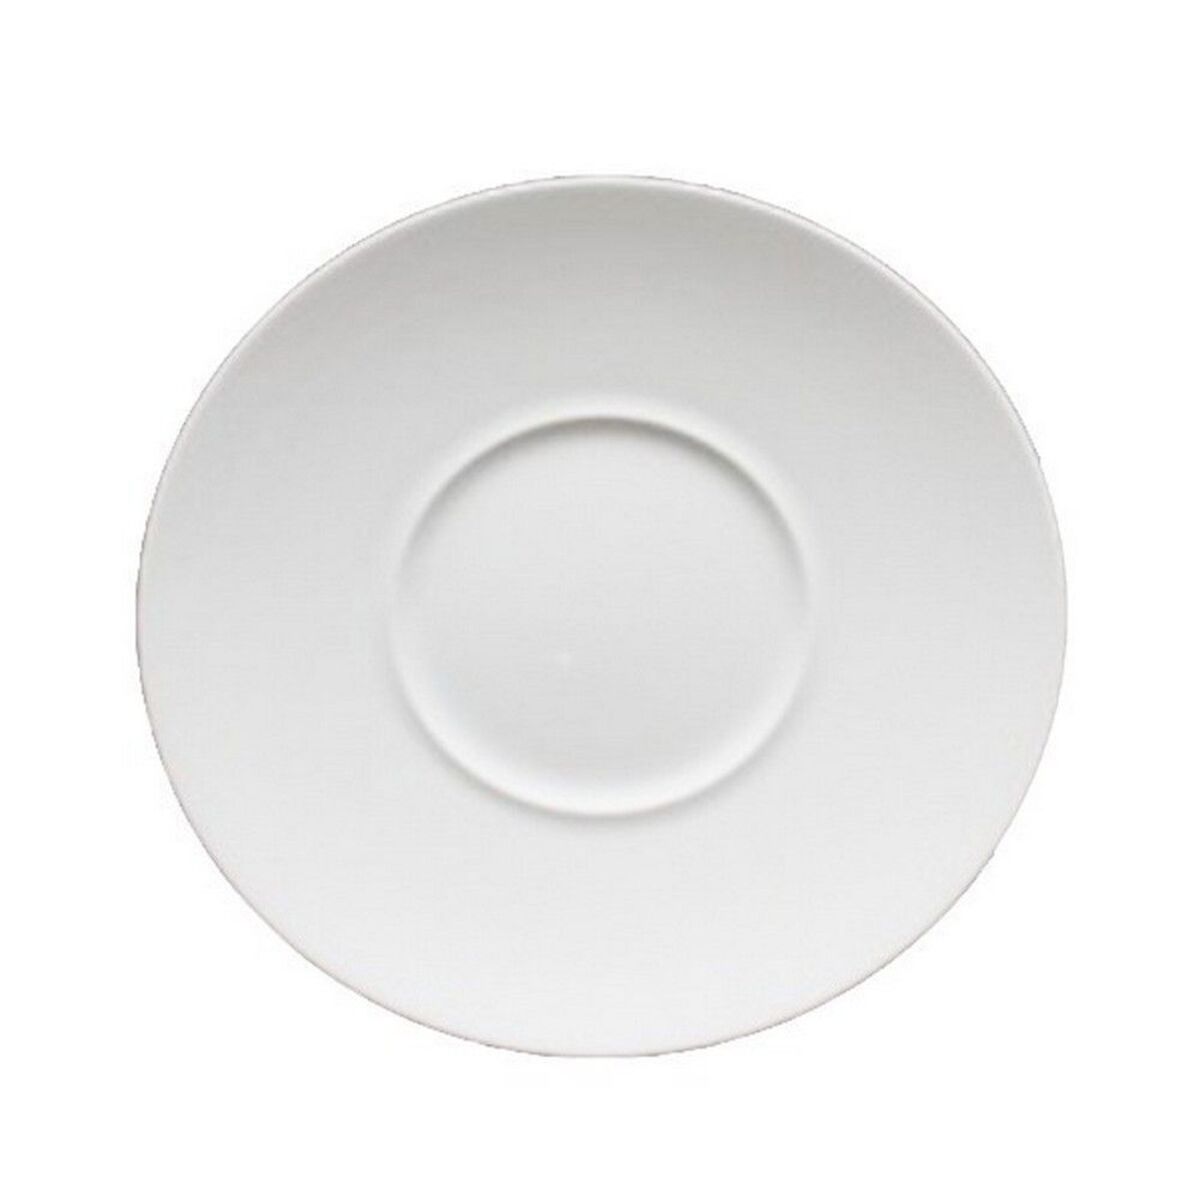 Assiette plate - gourmet 22 cm - par 96